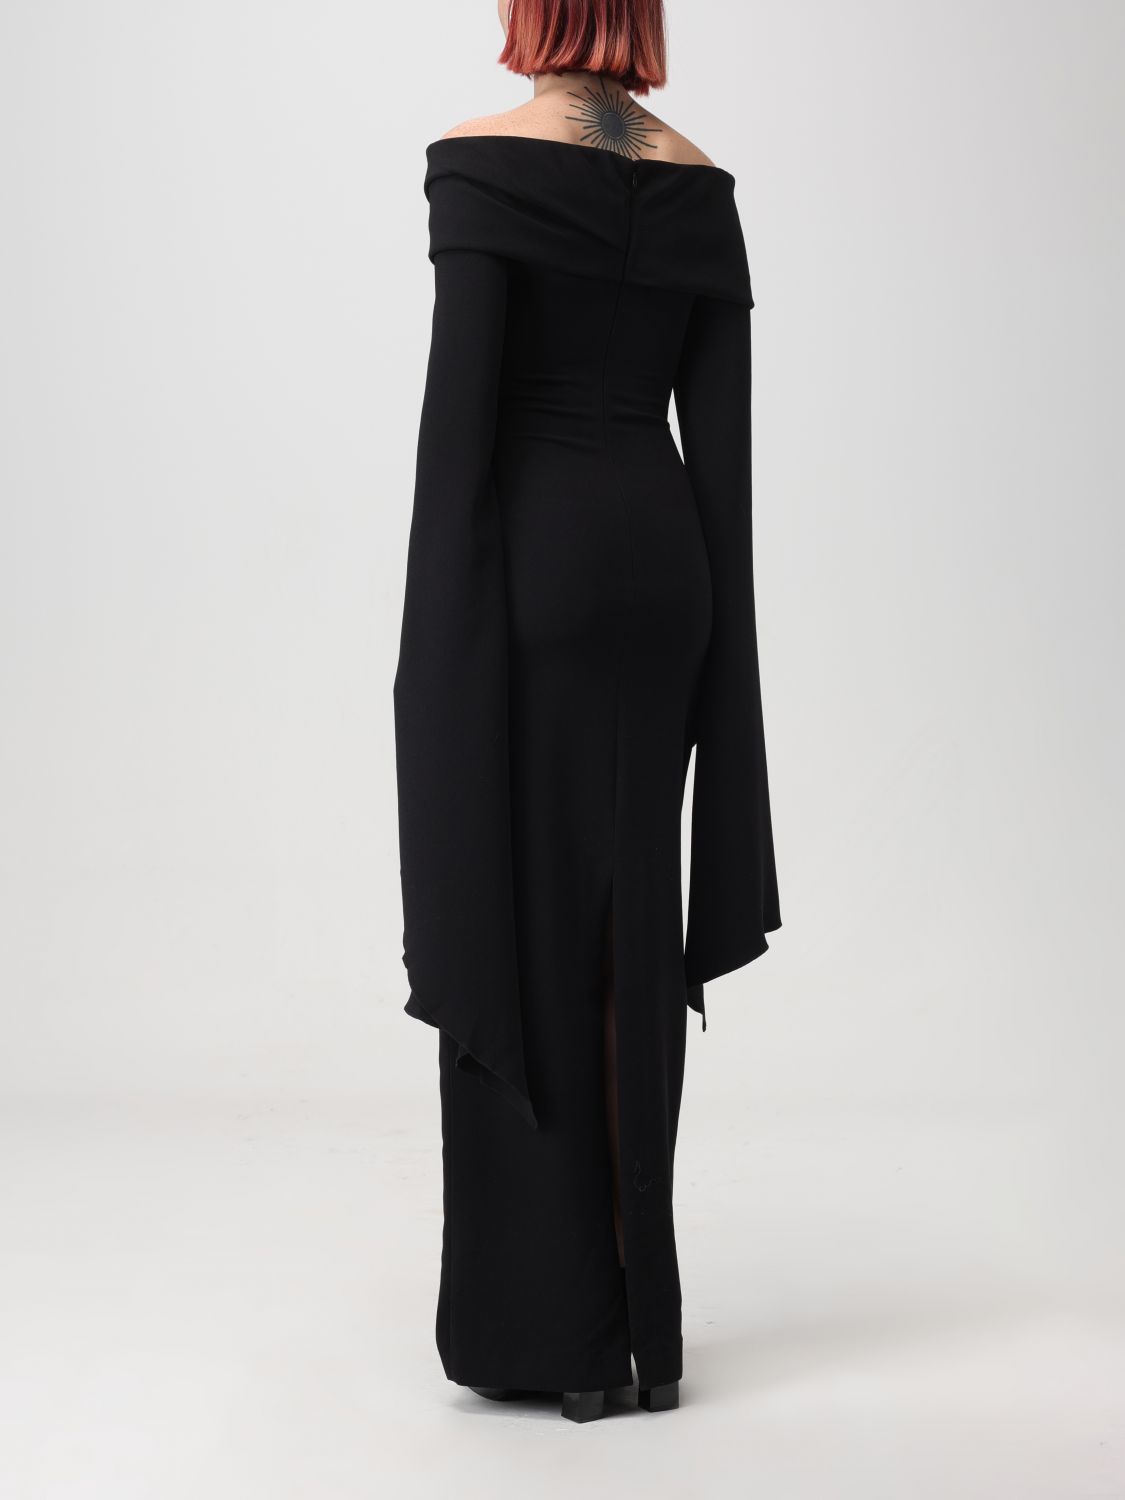 Solace London Dress Woman Black Woman